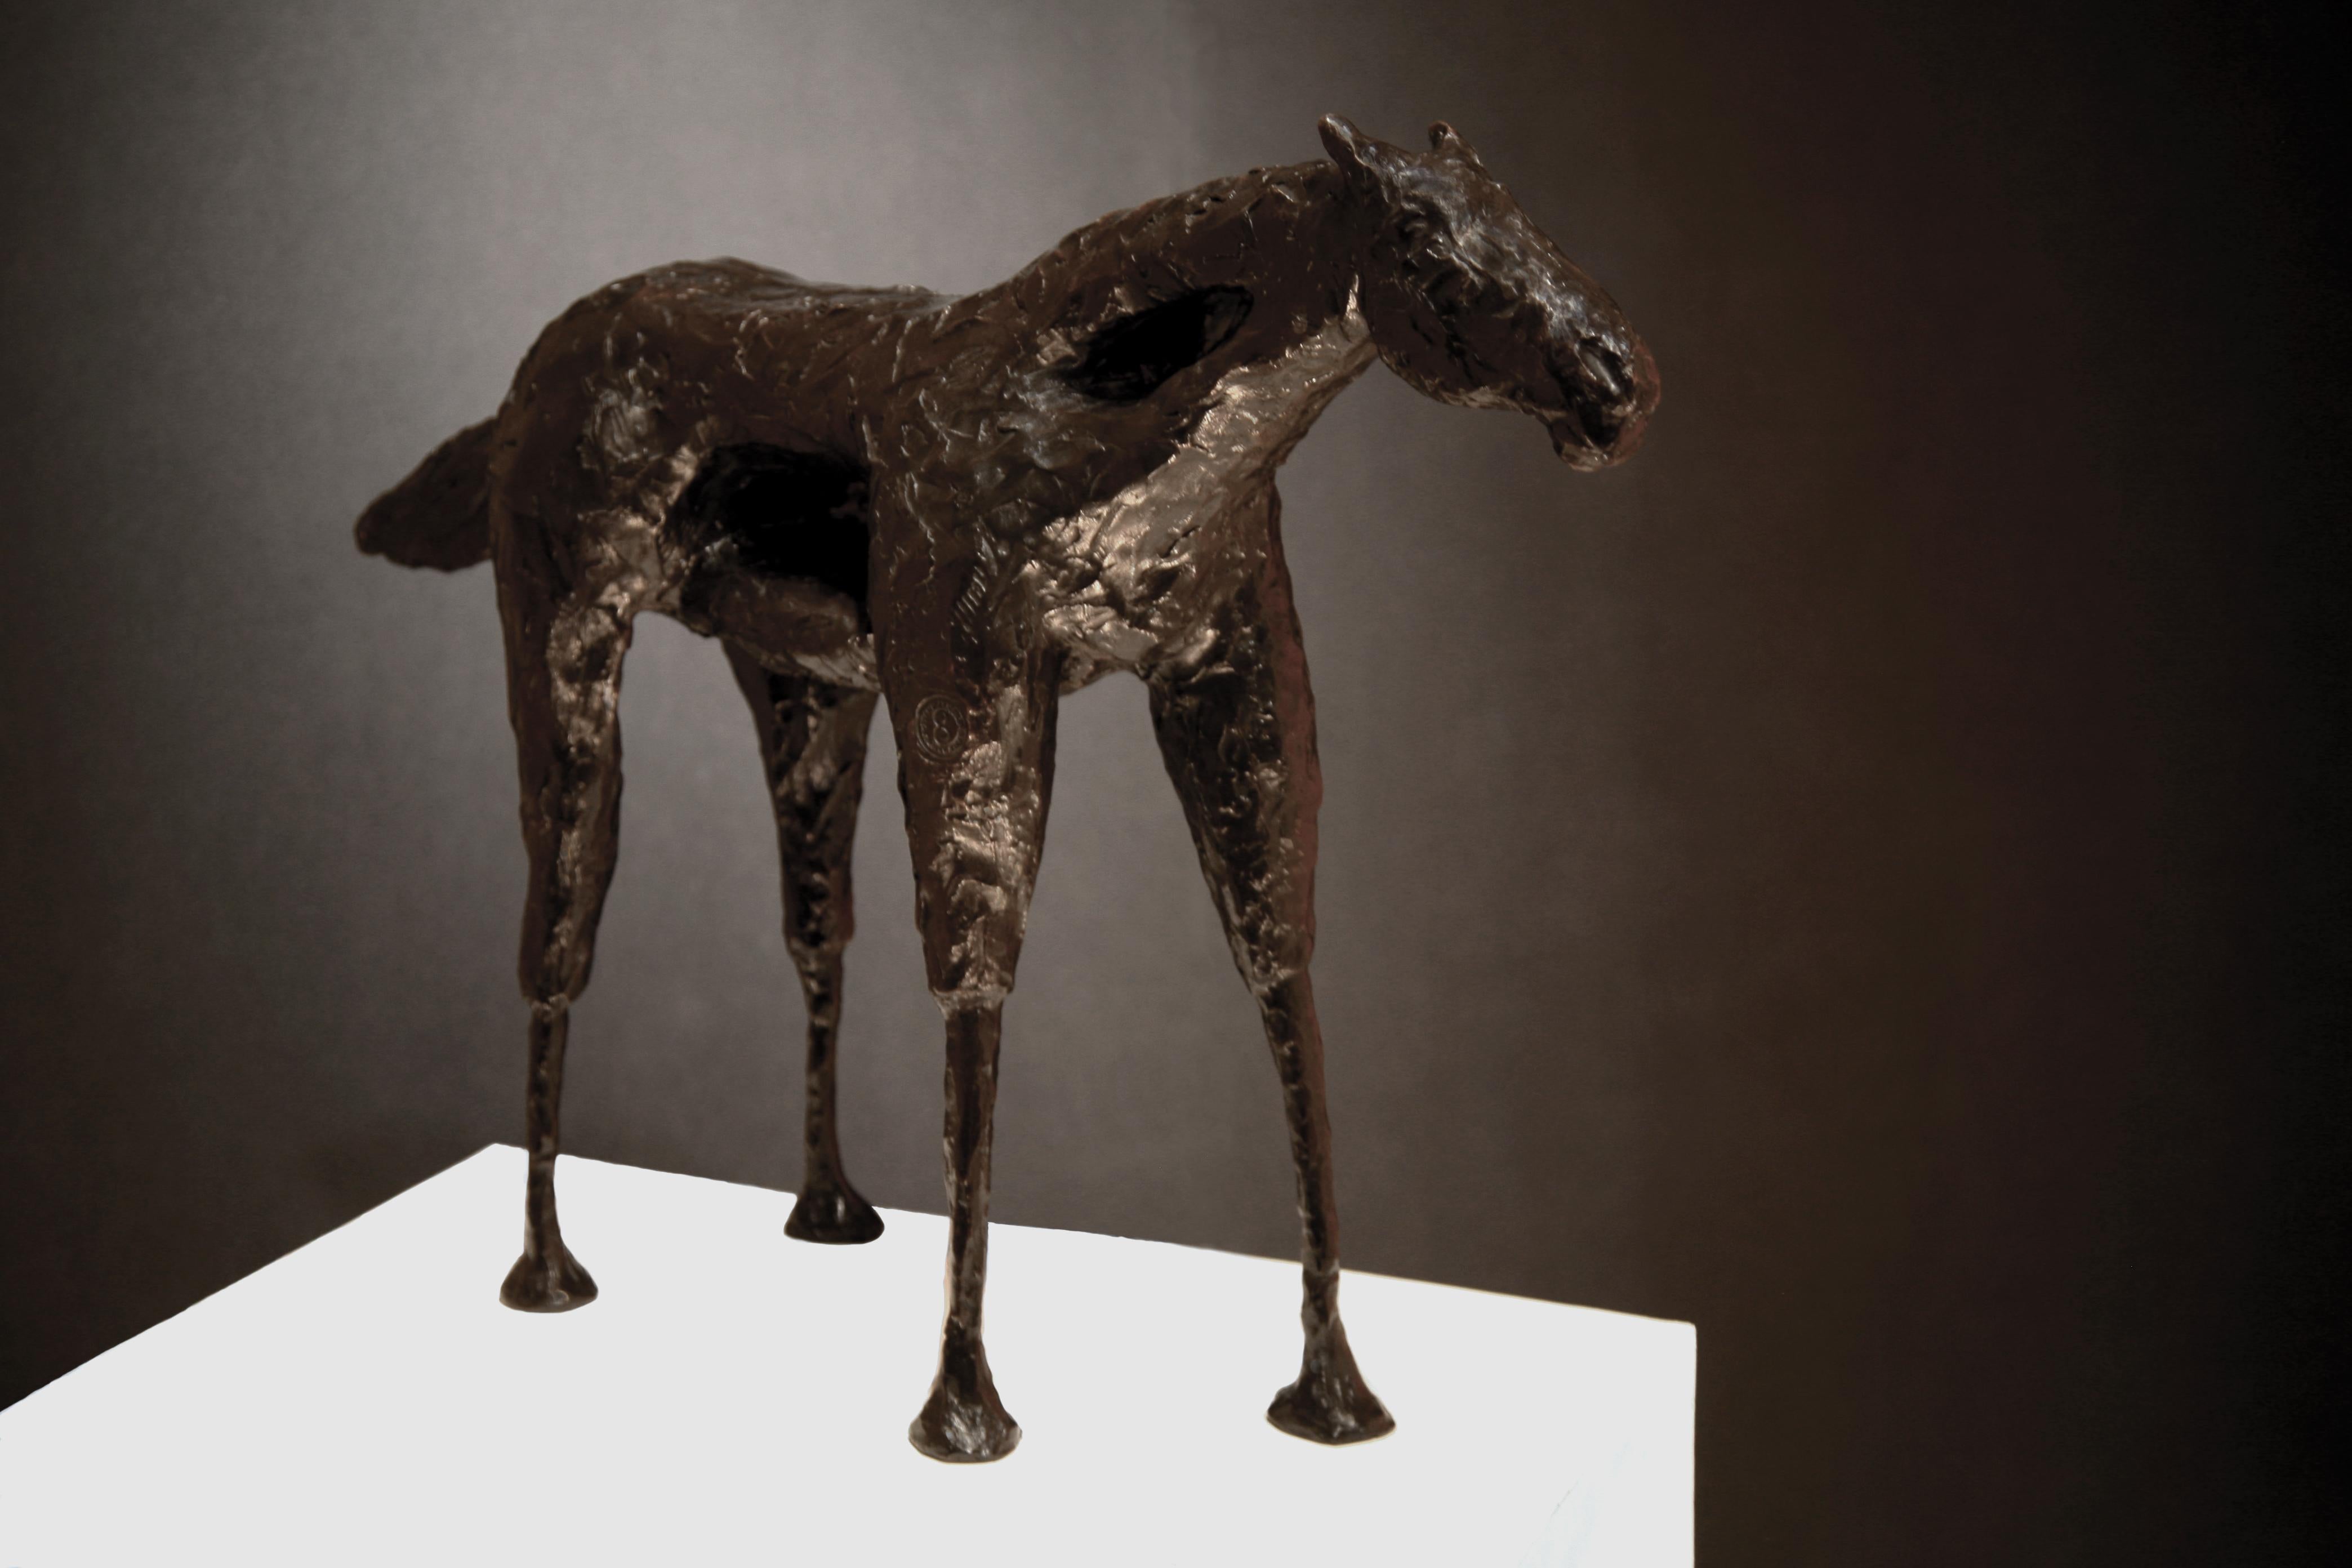 Caballo Arroyo (Bronze horse sculpture by Frank Arnold)